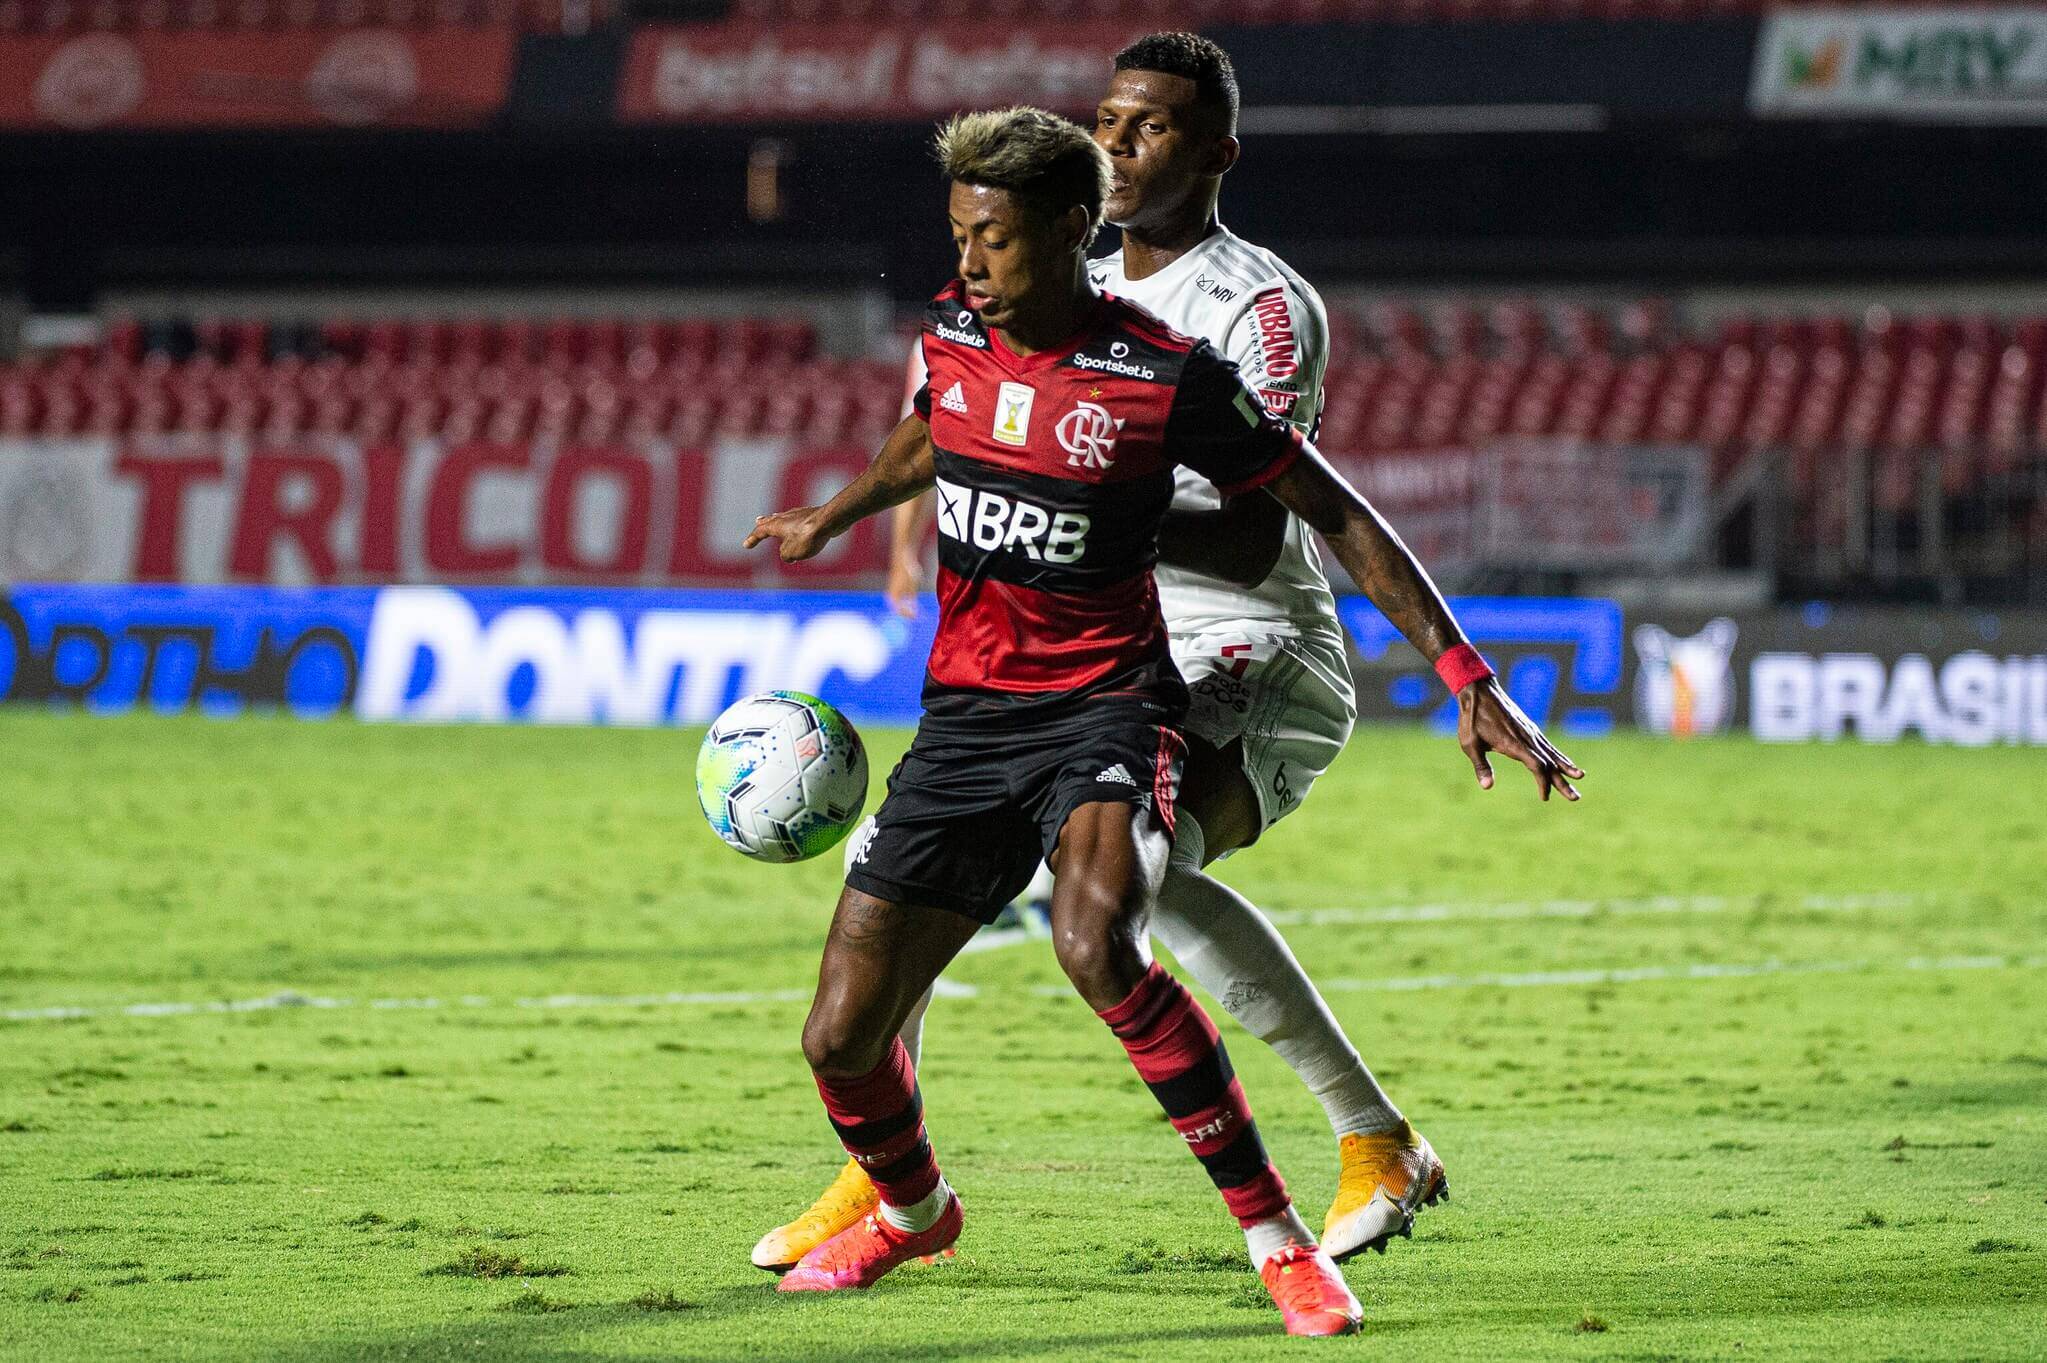 São Paulo x Flamengo. Foto: Alexandre Vidal / Flamengo